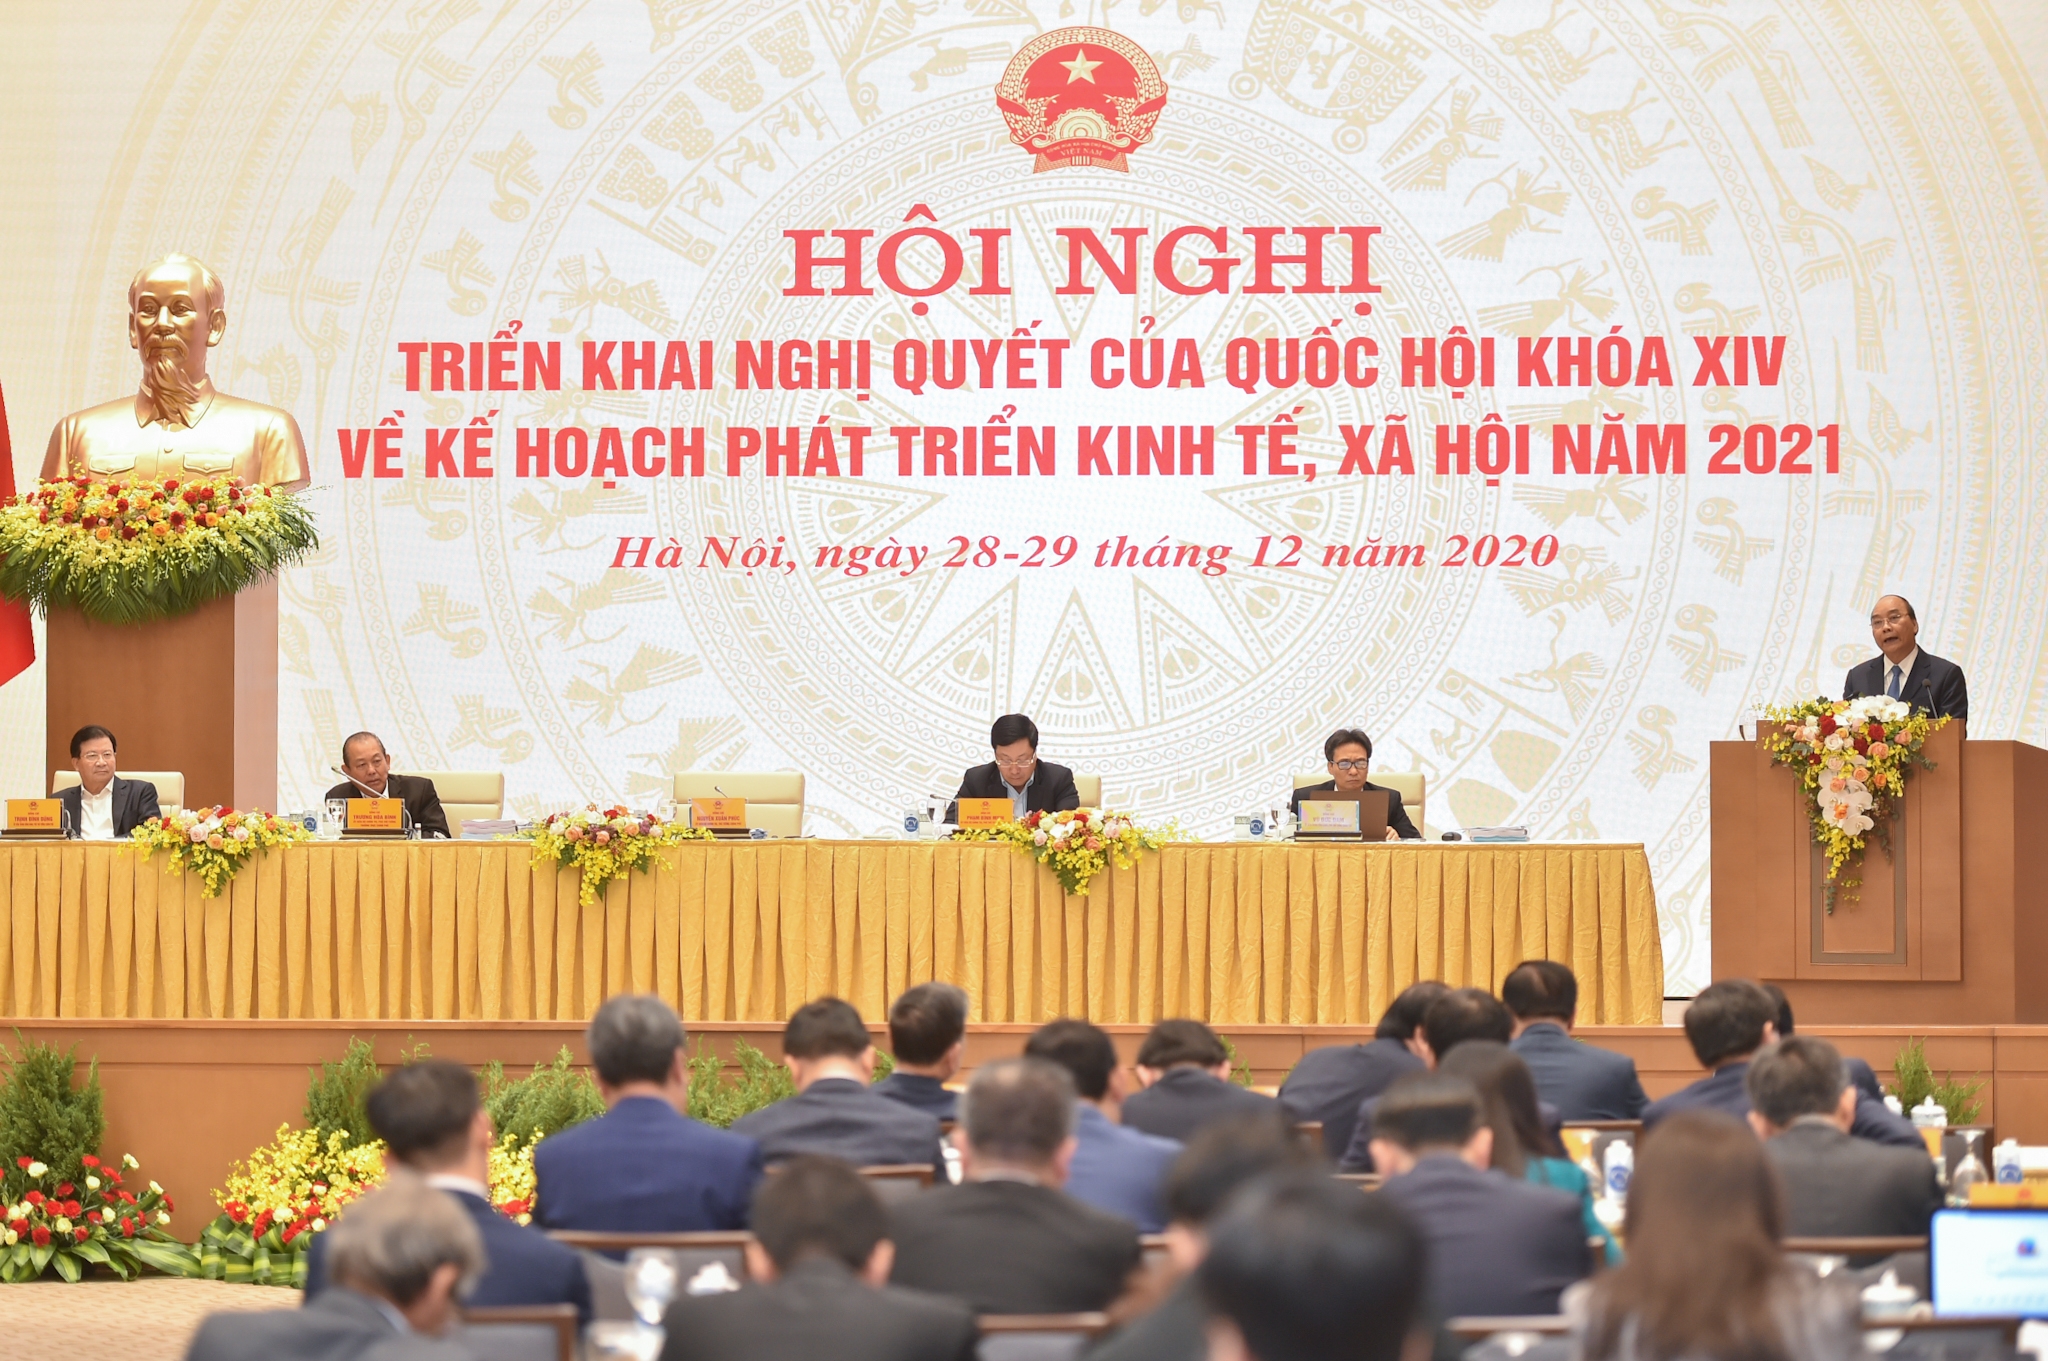 Phấn đấu để Việt Nam luôn là nền kinh tế năng động, sáng tạo, phát triển nhanh